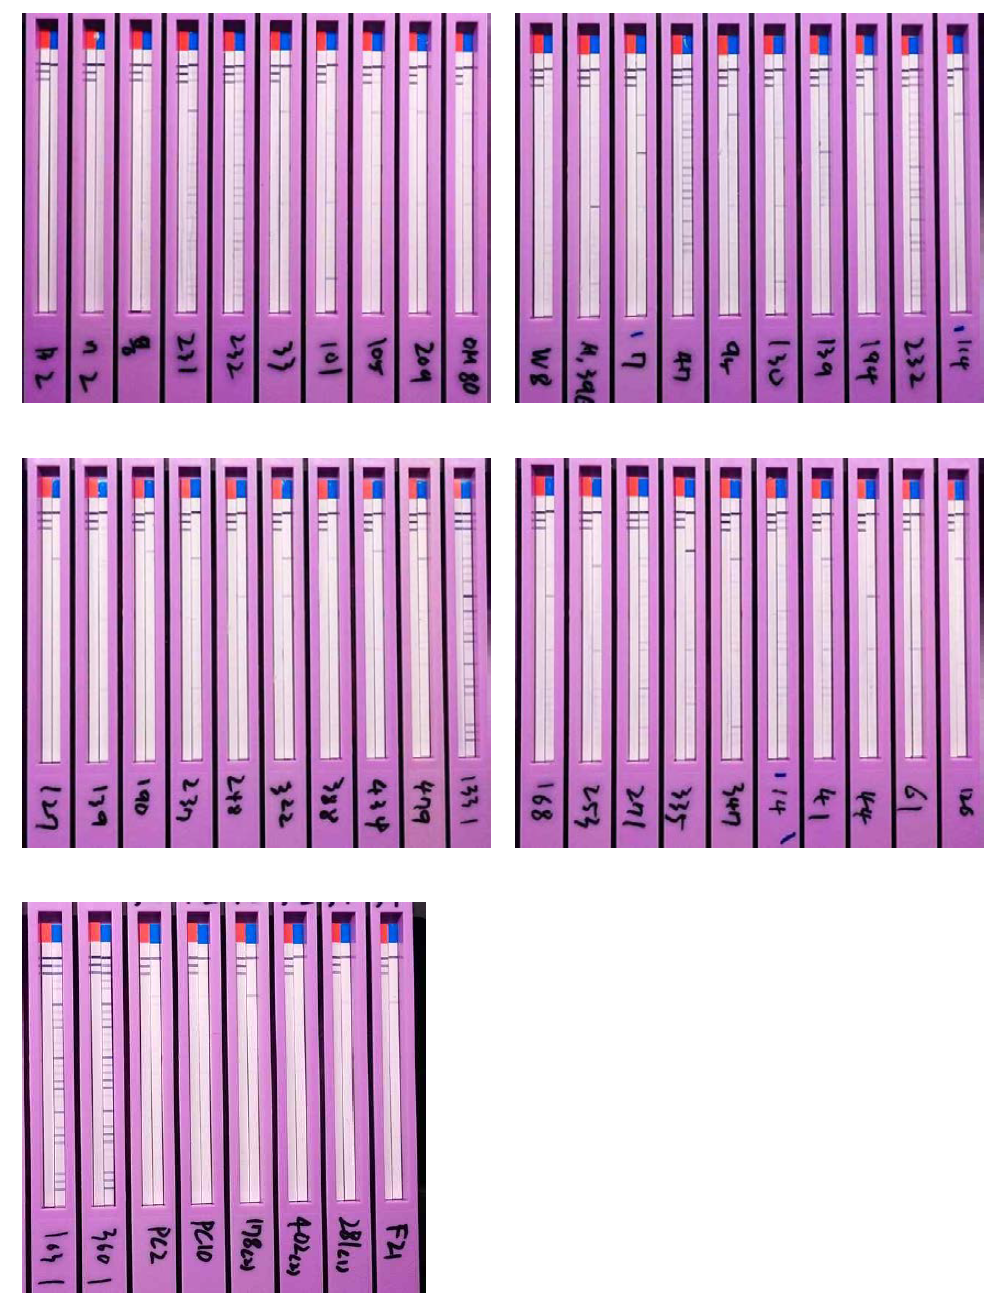 46개의 알레르겐 양성 검체에 대한 한약재 알레르겐 시험 결과 패널 사진